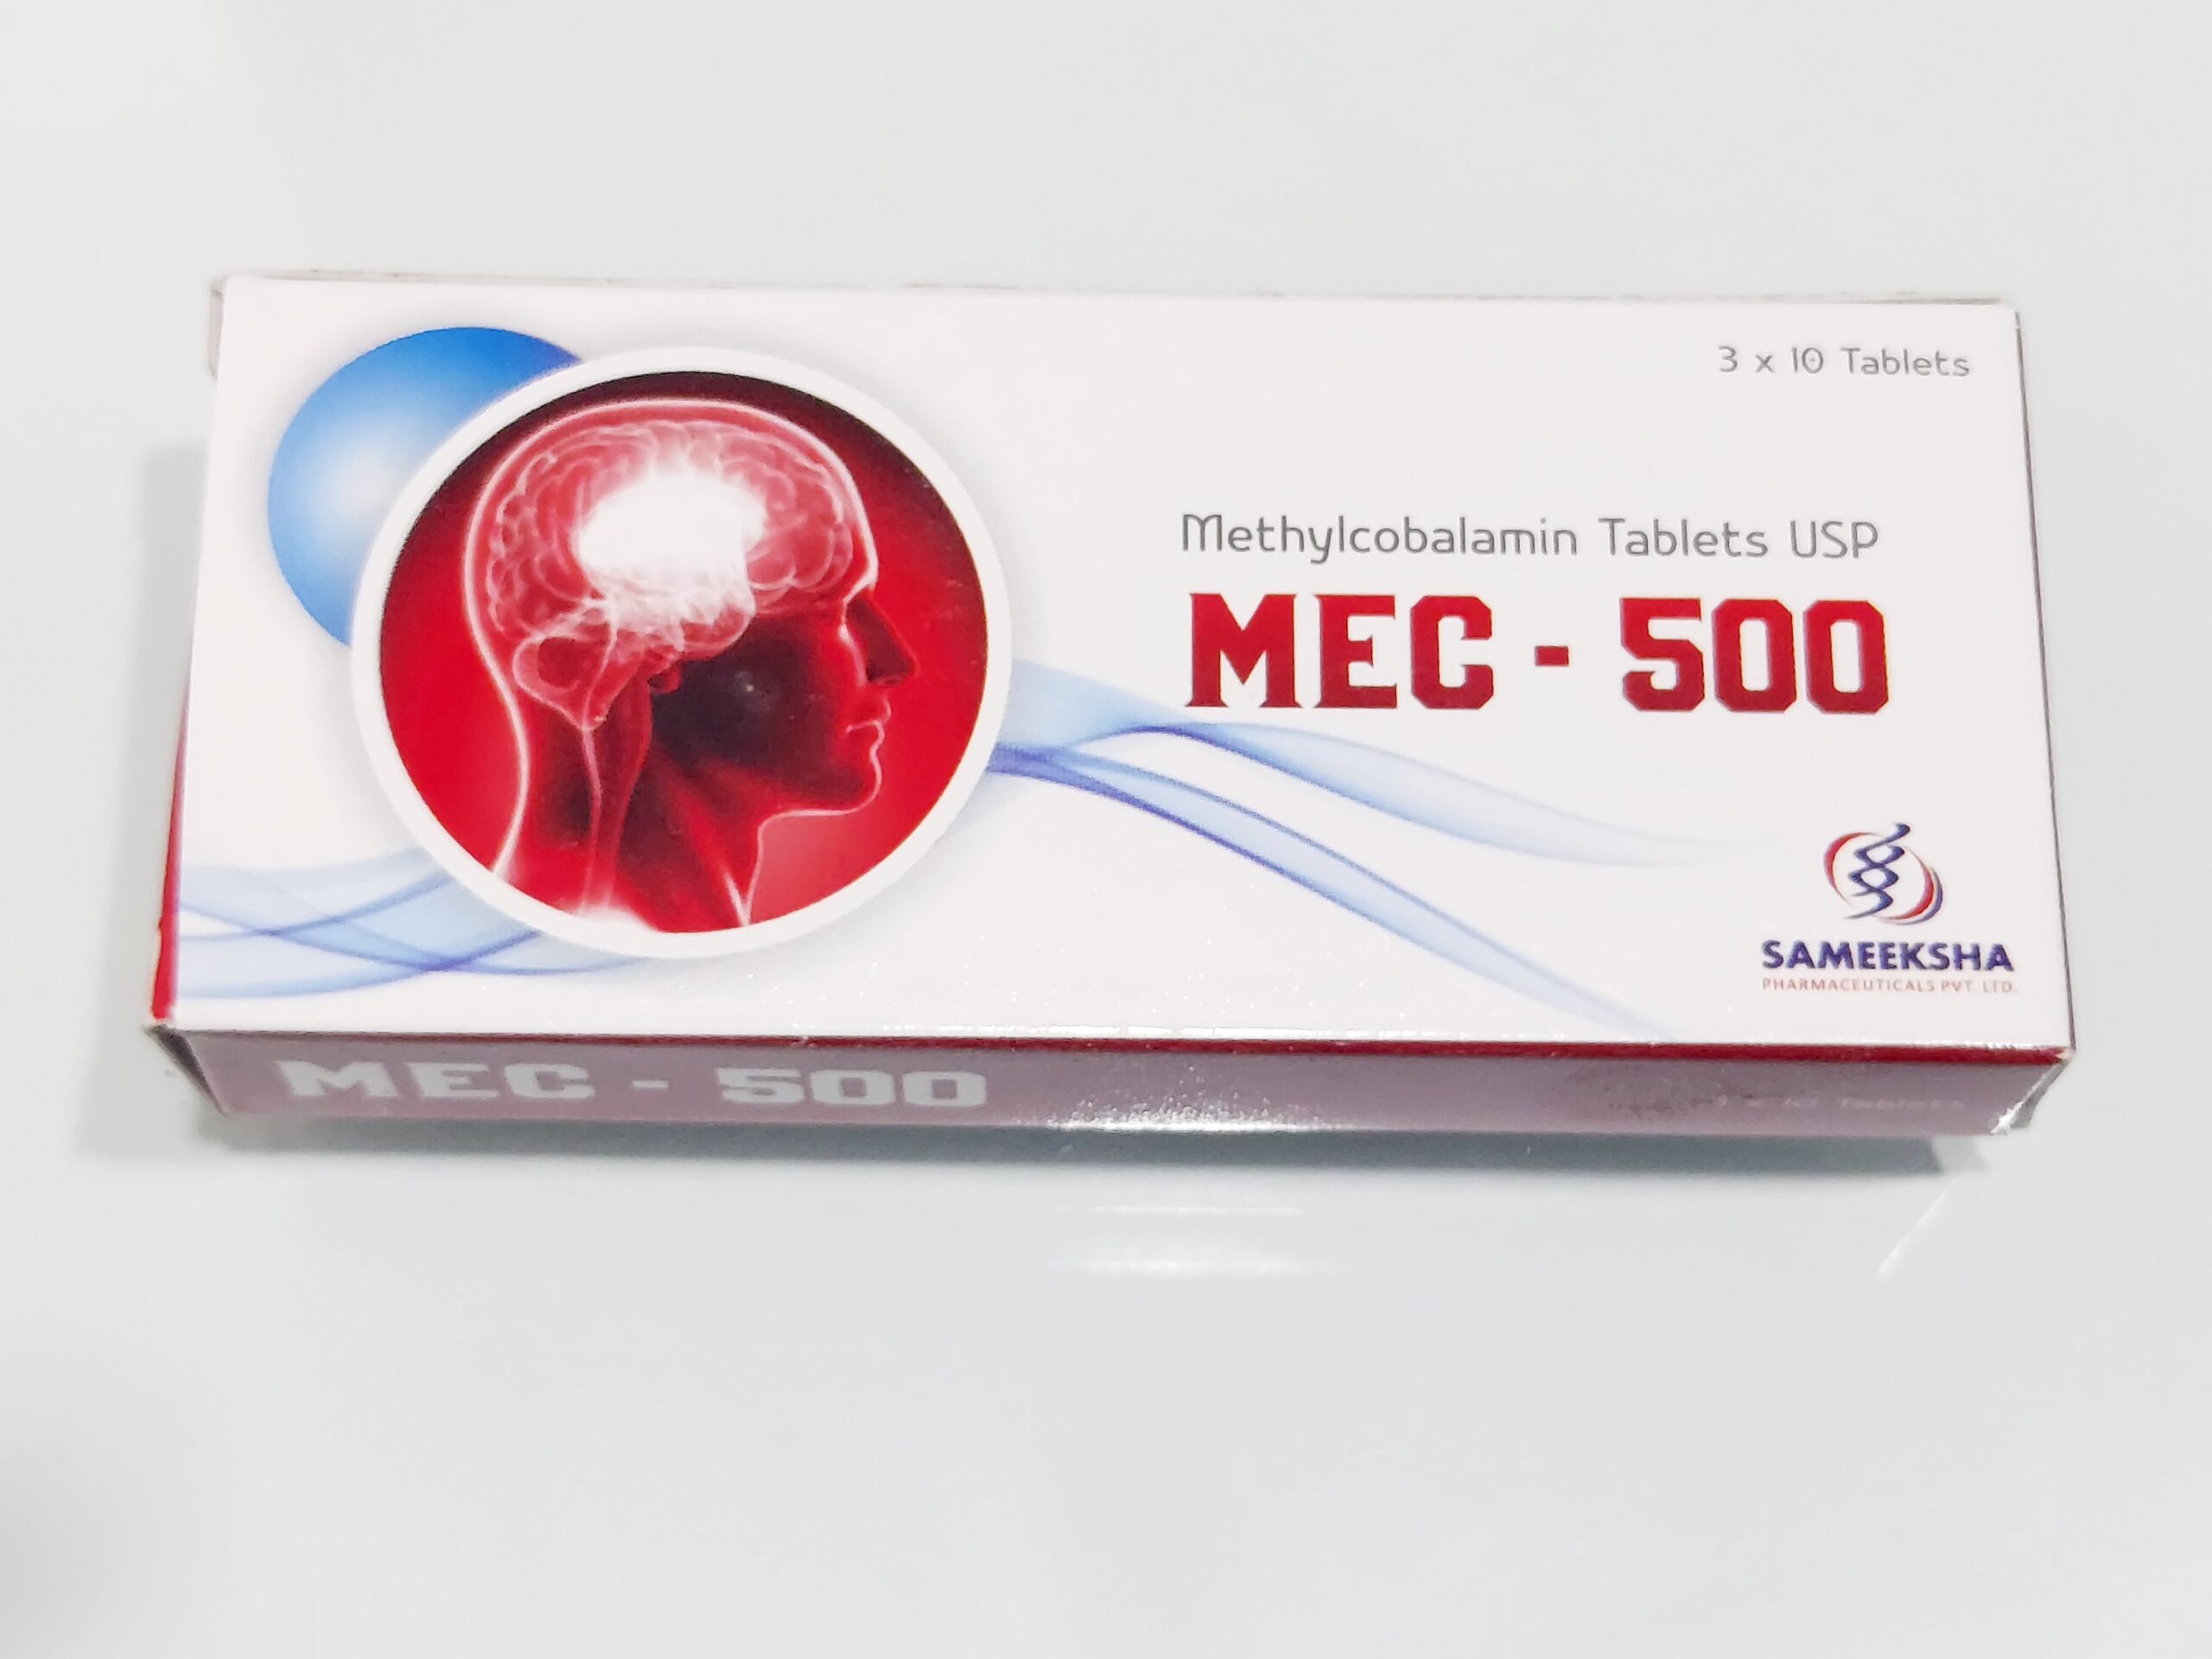 MEC-500